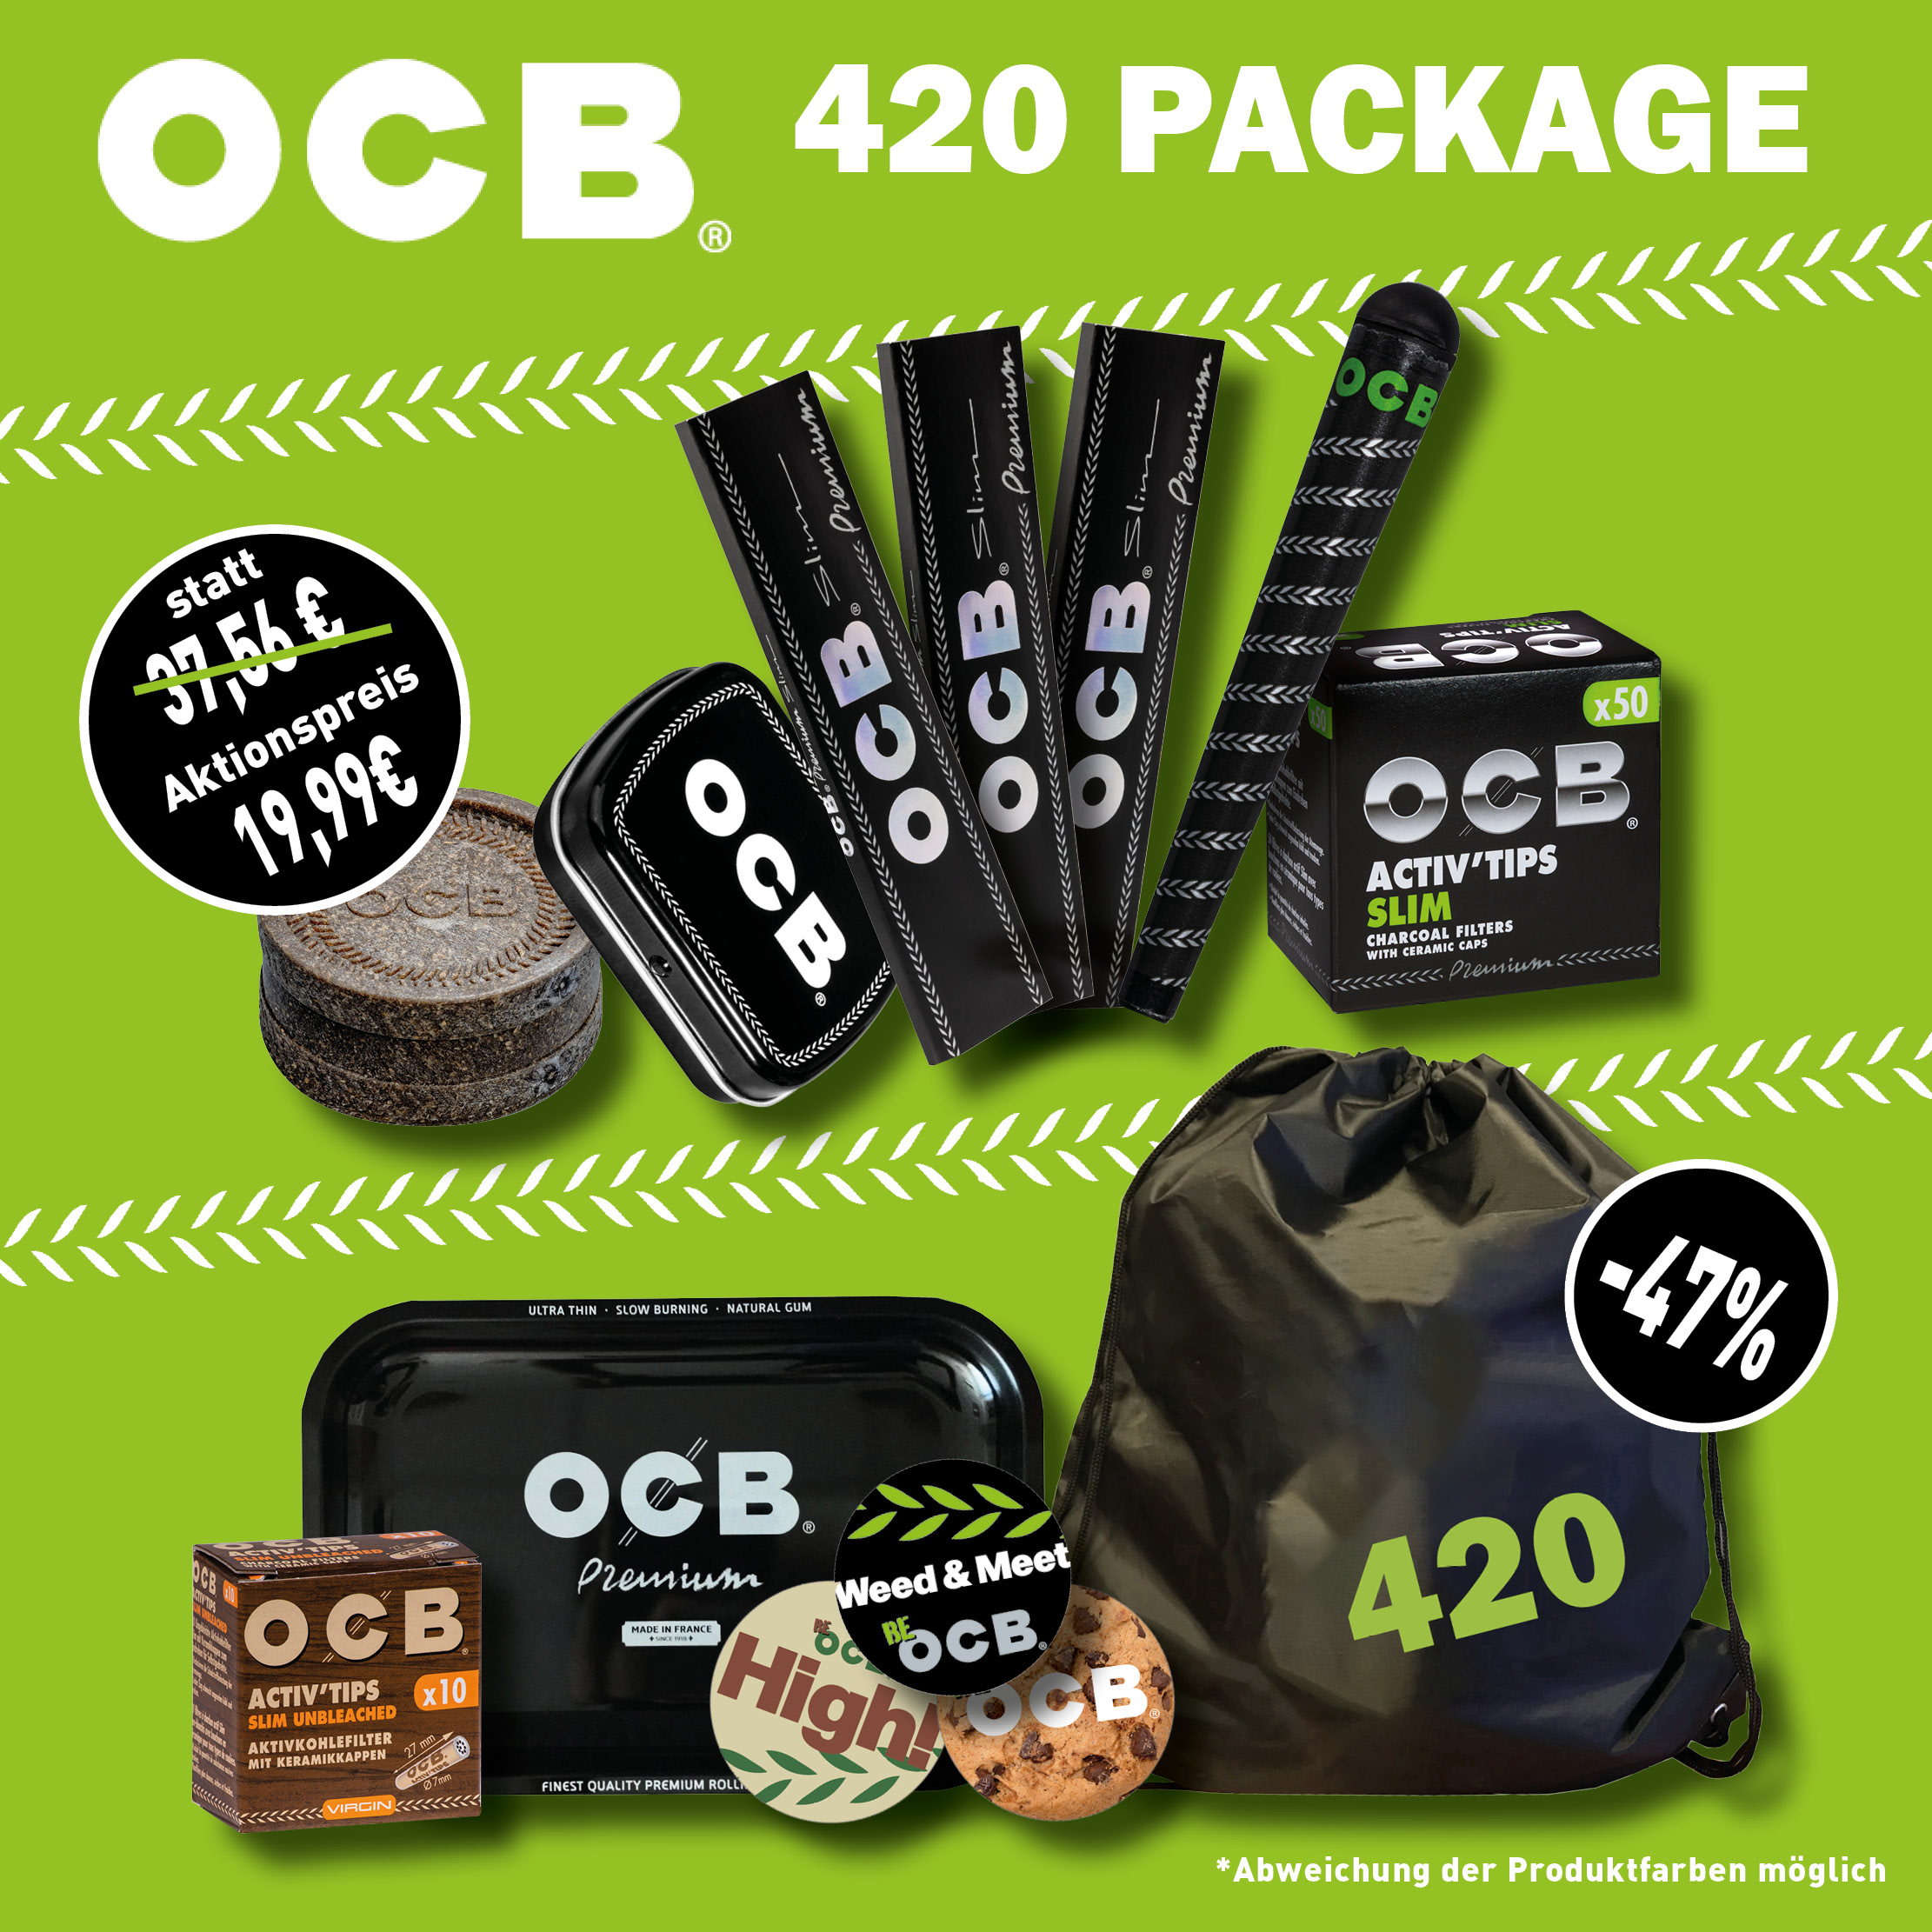 OCB 420 Package # 2